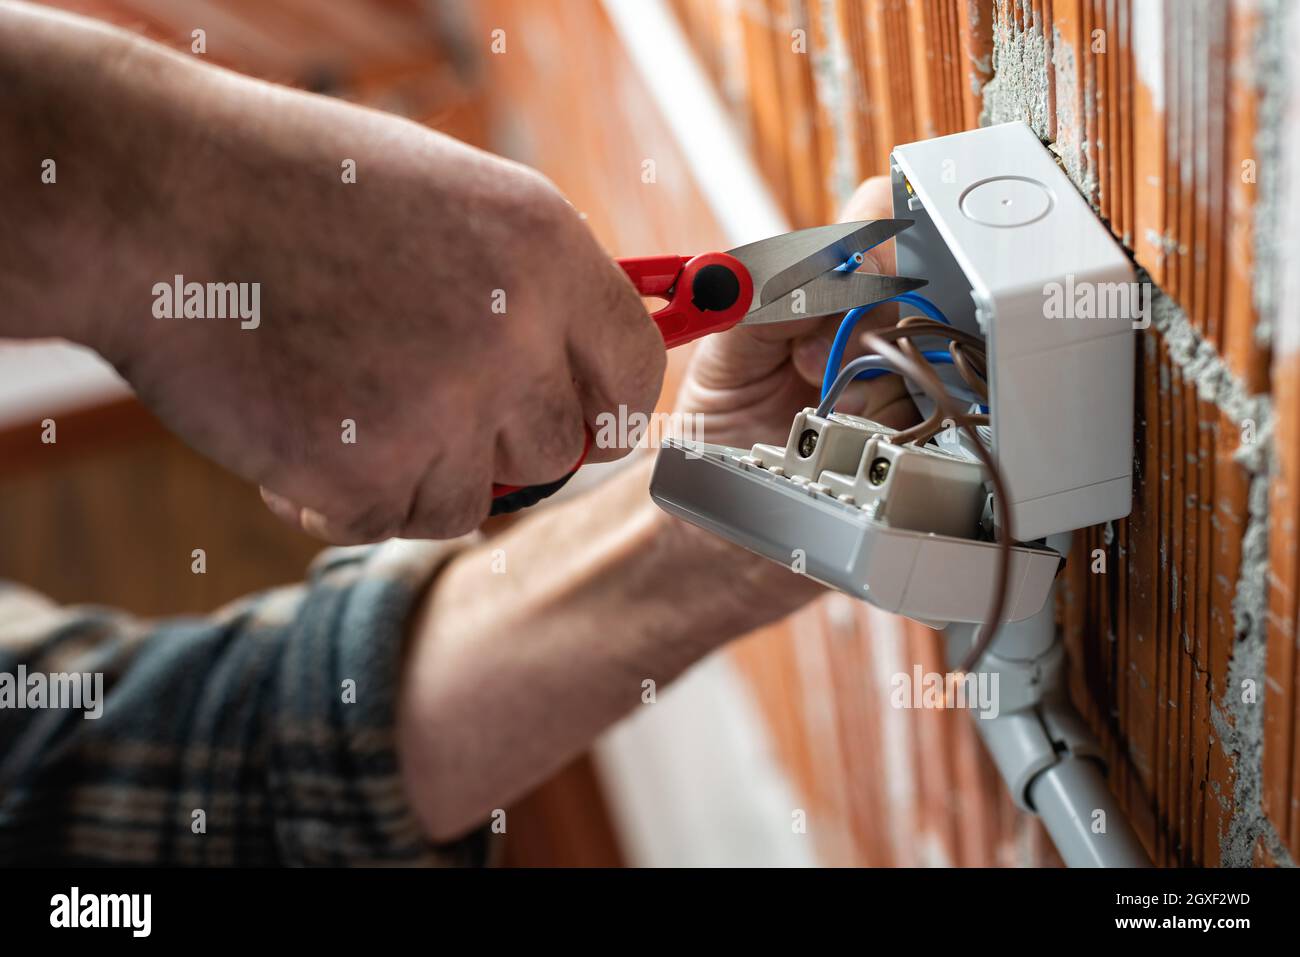 Ansicht von unten. Elektriker bei der Arbeit mit einer Schere bereitet die elektrischen Kabel eines elektrischen Systems vor. Bauindustrie. Stockfoto